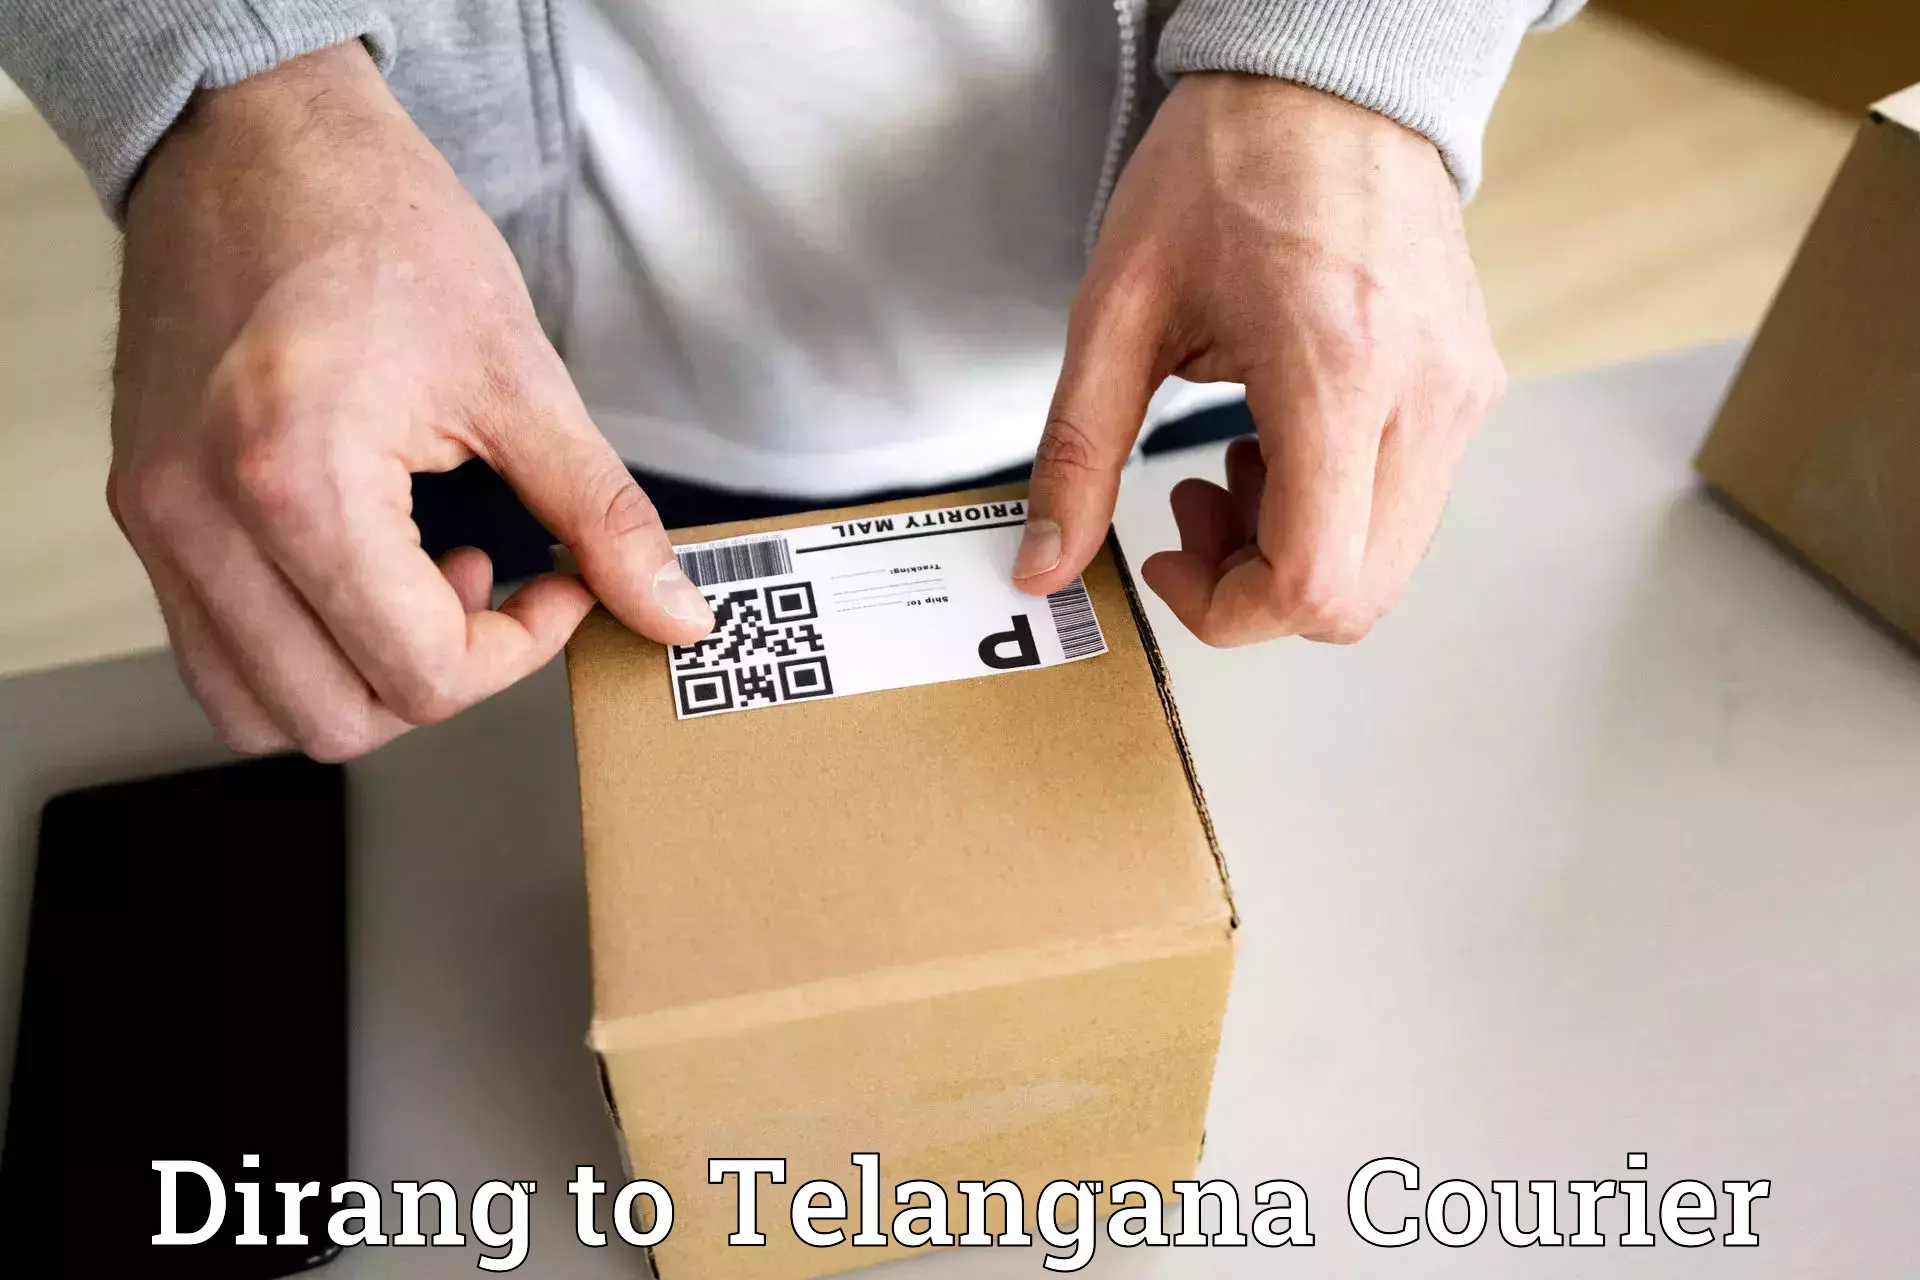 Premium courier solutions Dirang to Bhuvanagiri